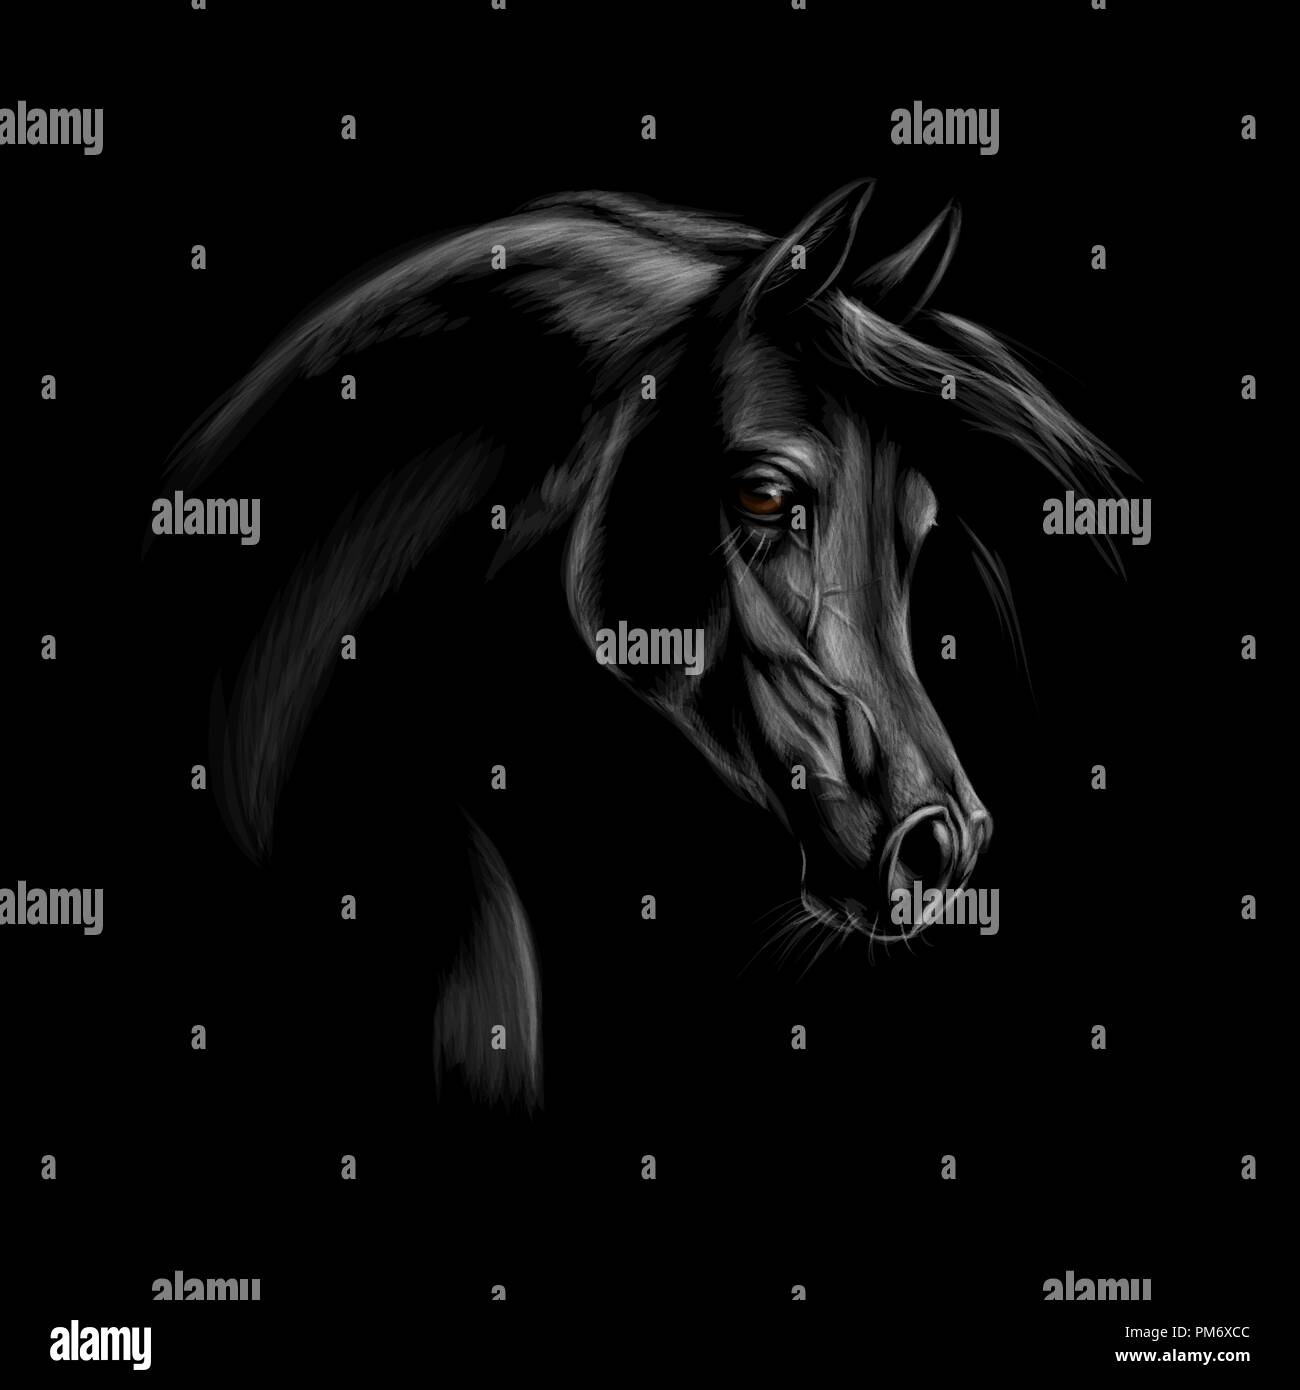 Porträt eines arabischen Pferd Kopf auf einem schwarzen Hintergrund. Stock Vektor